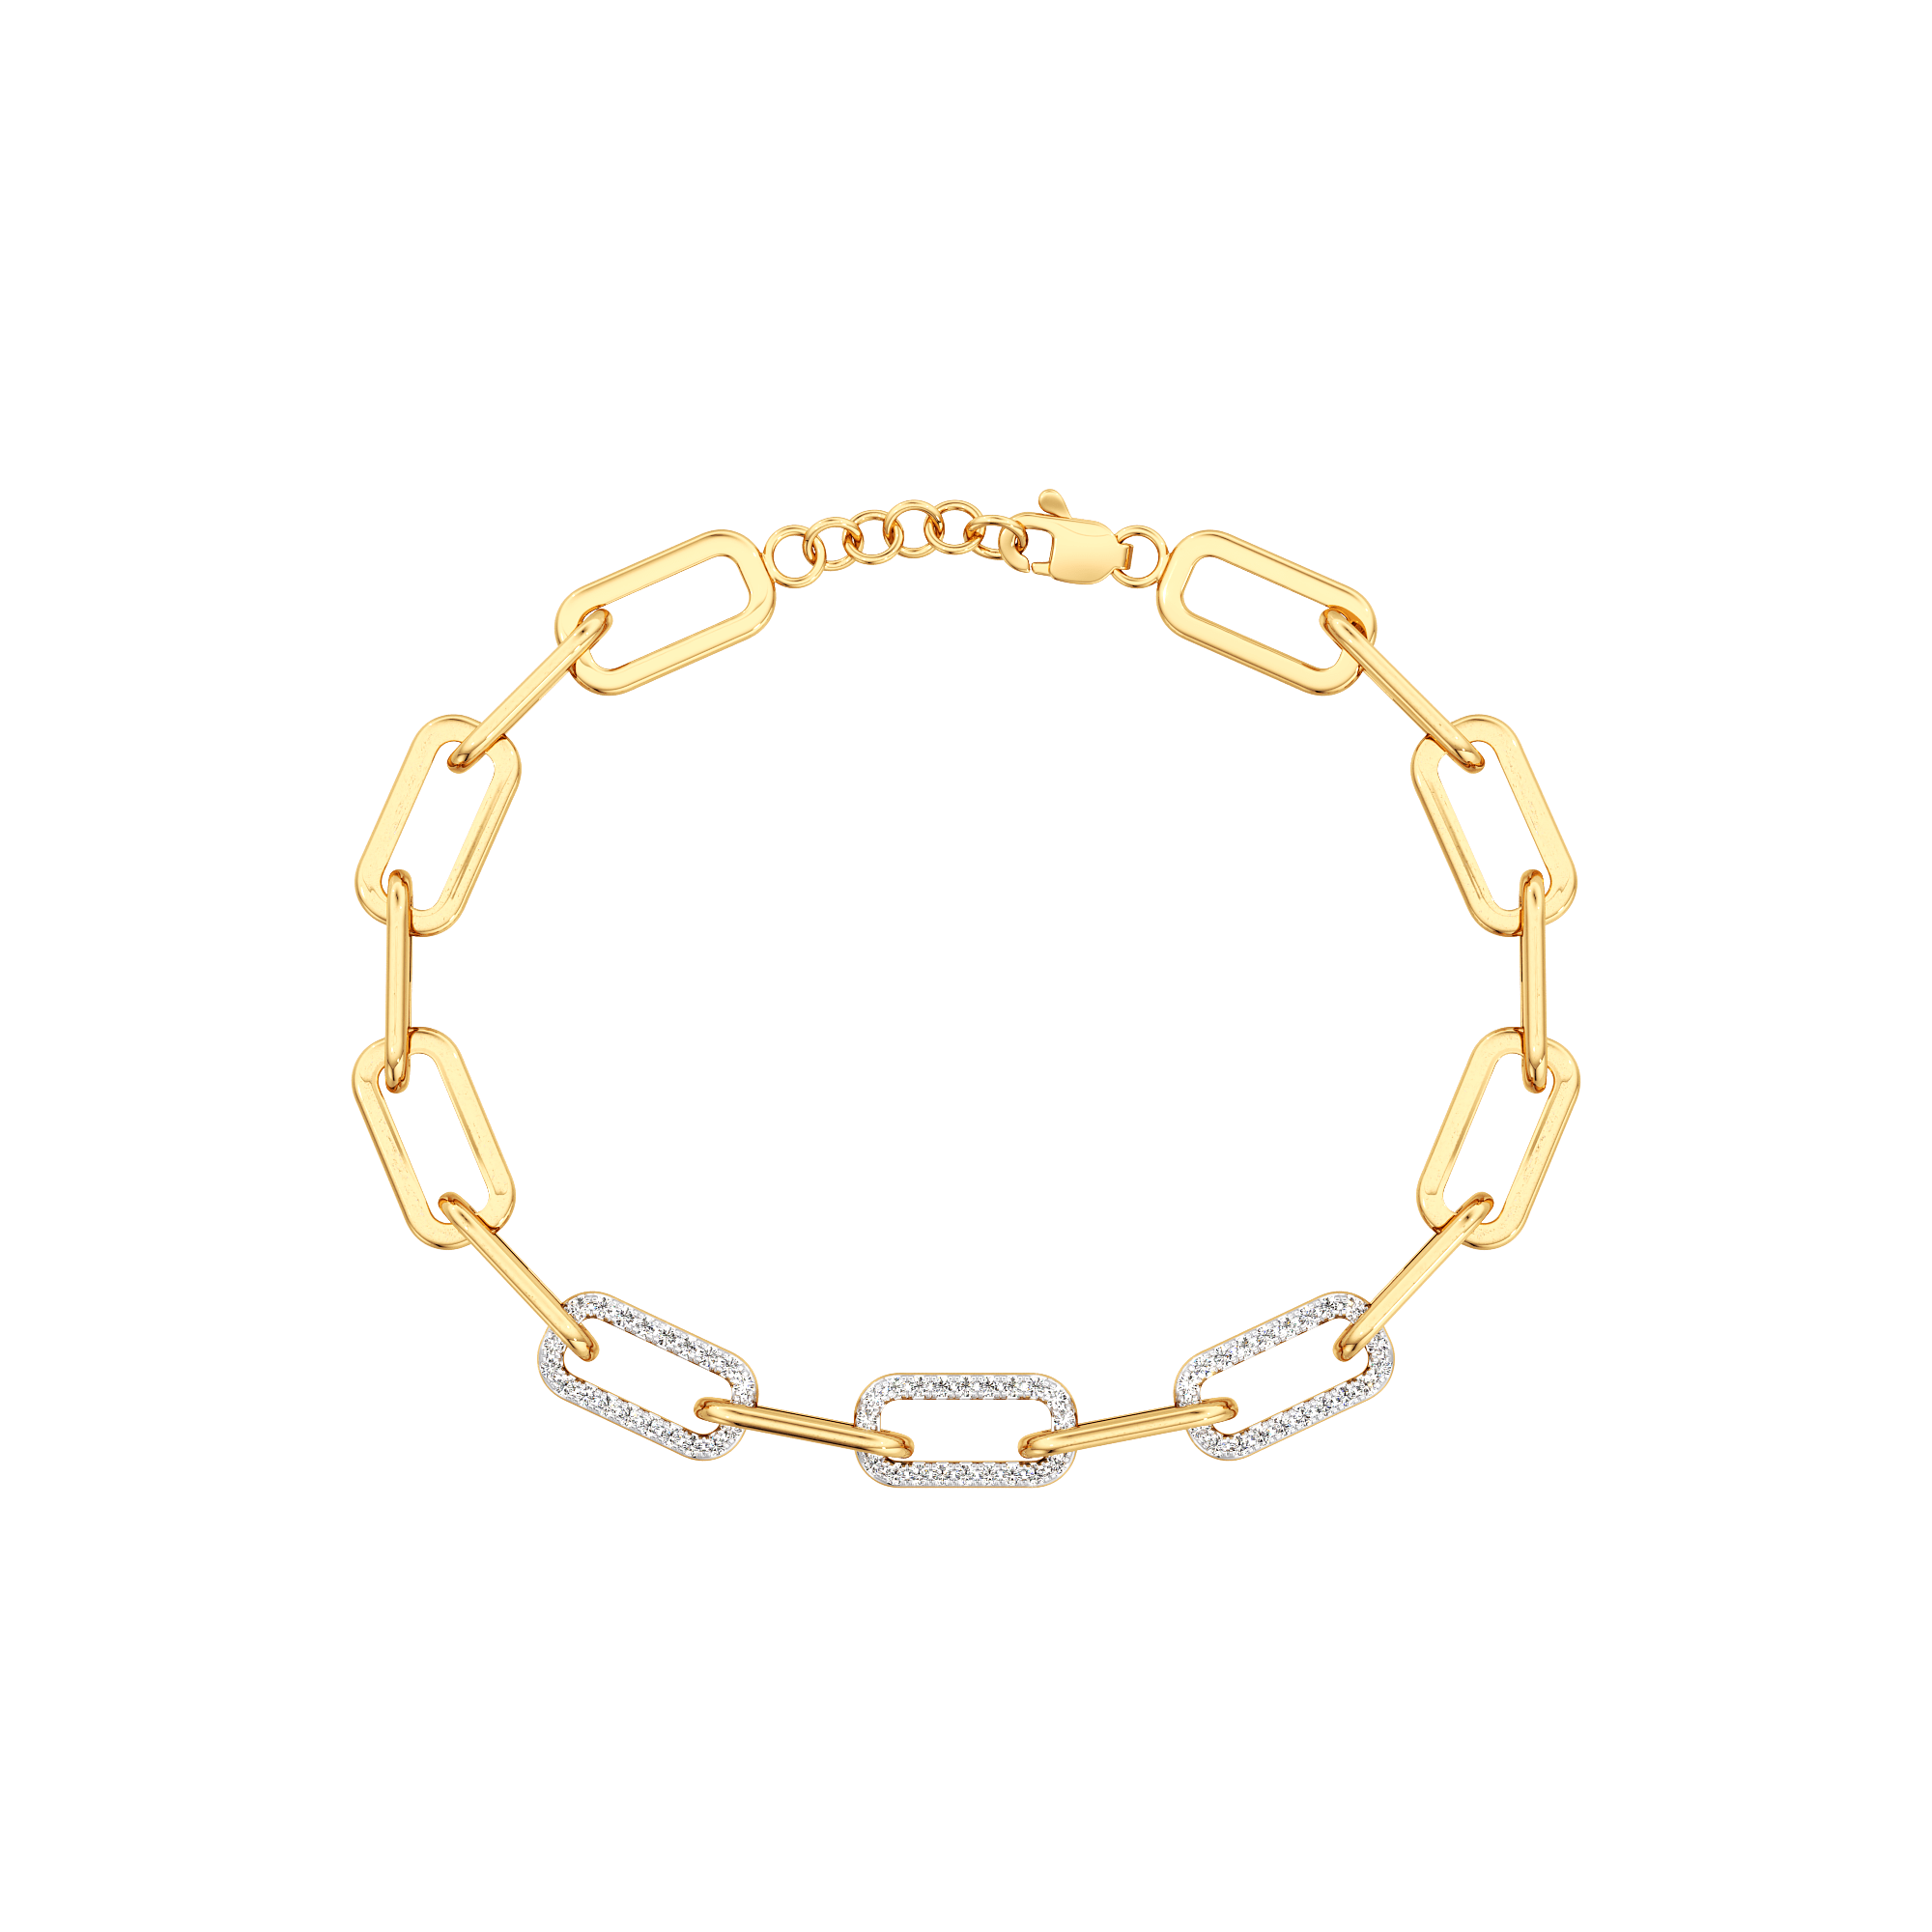 Diamond bracelet for gifting